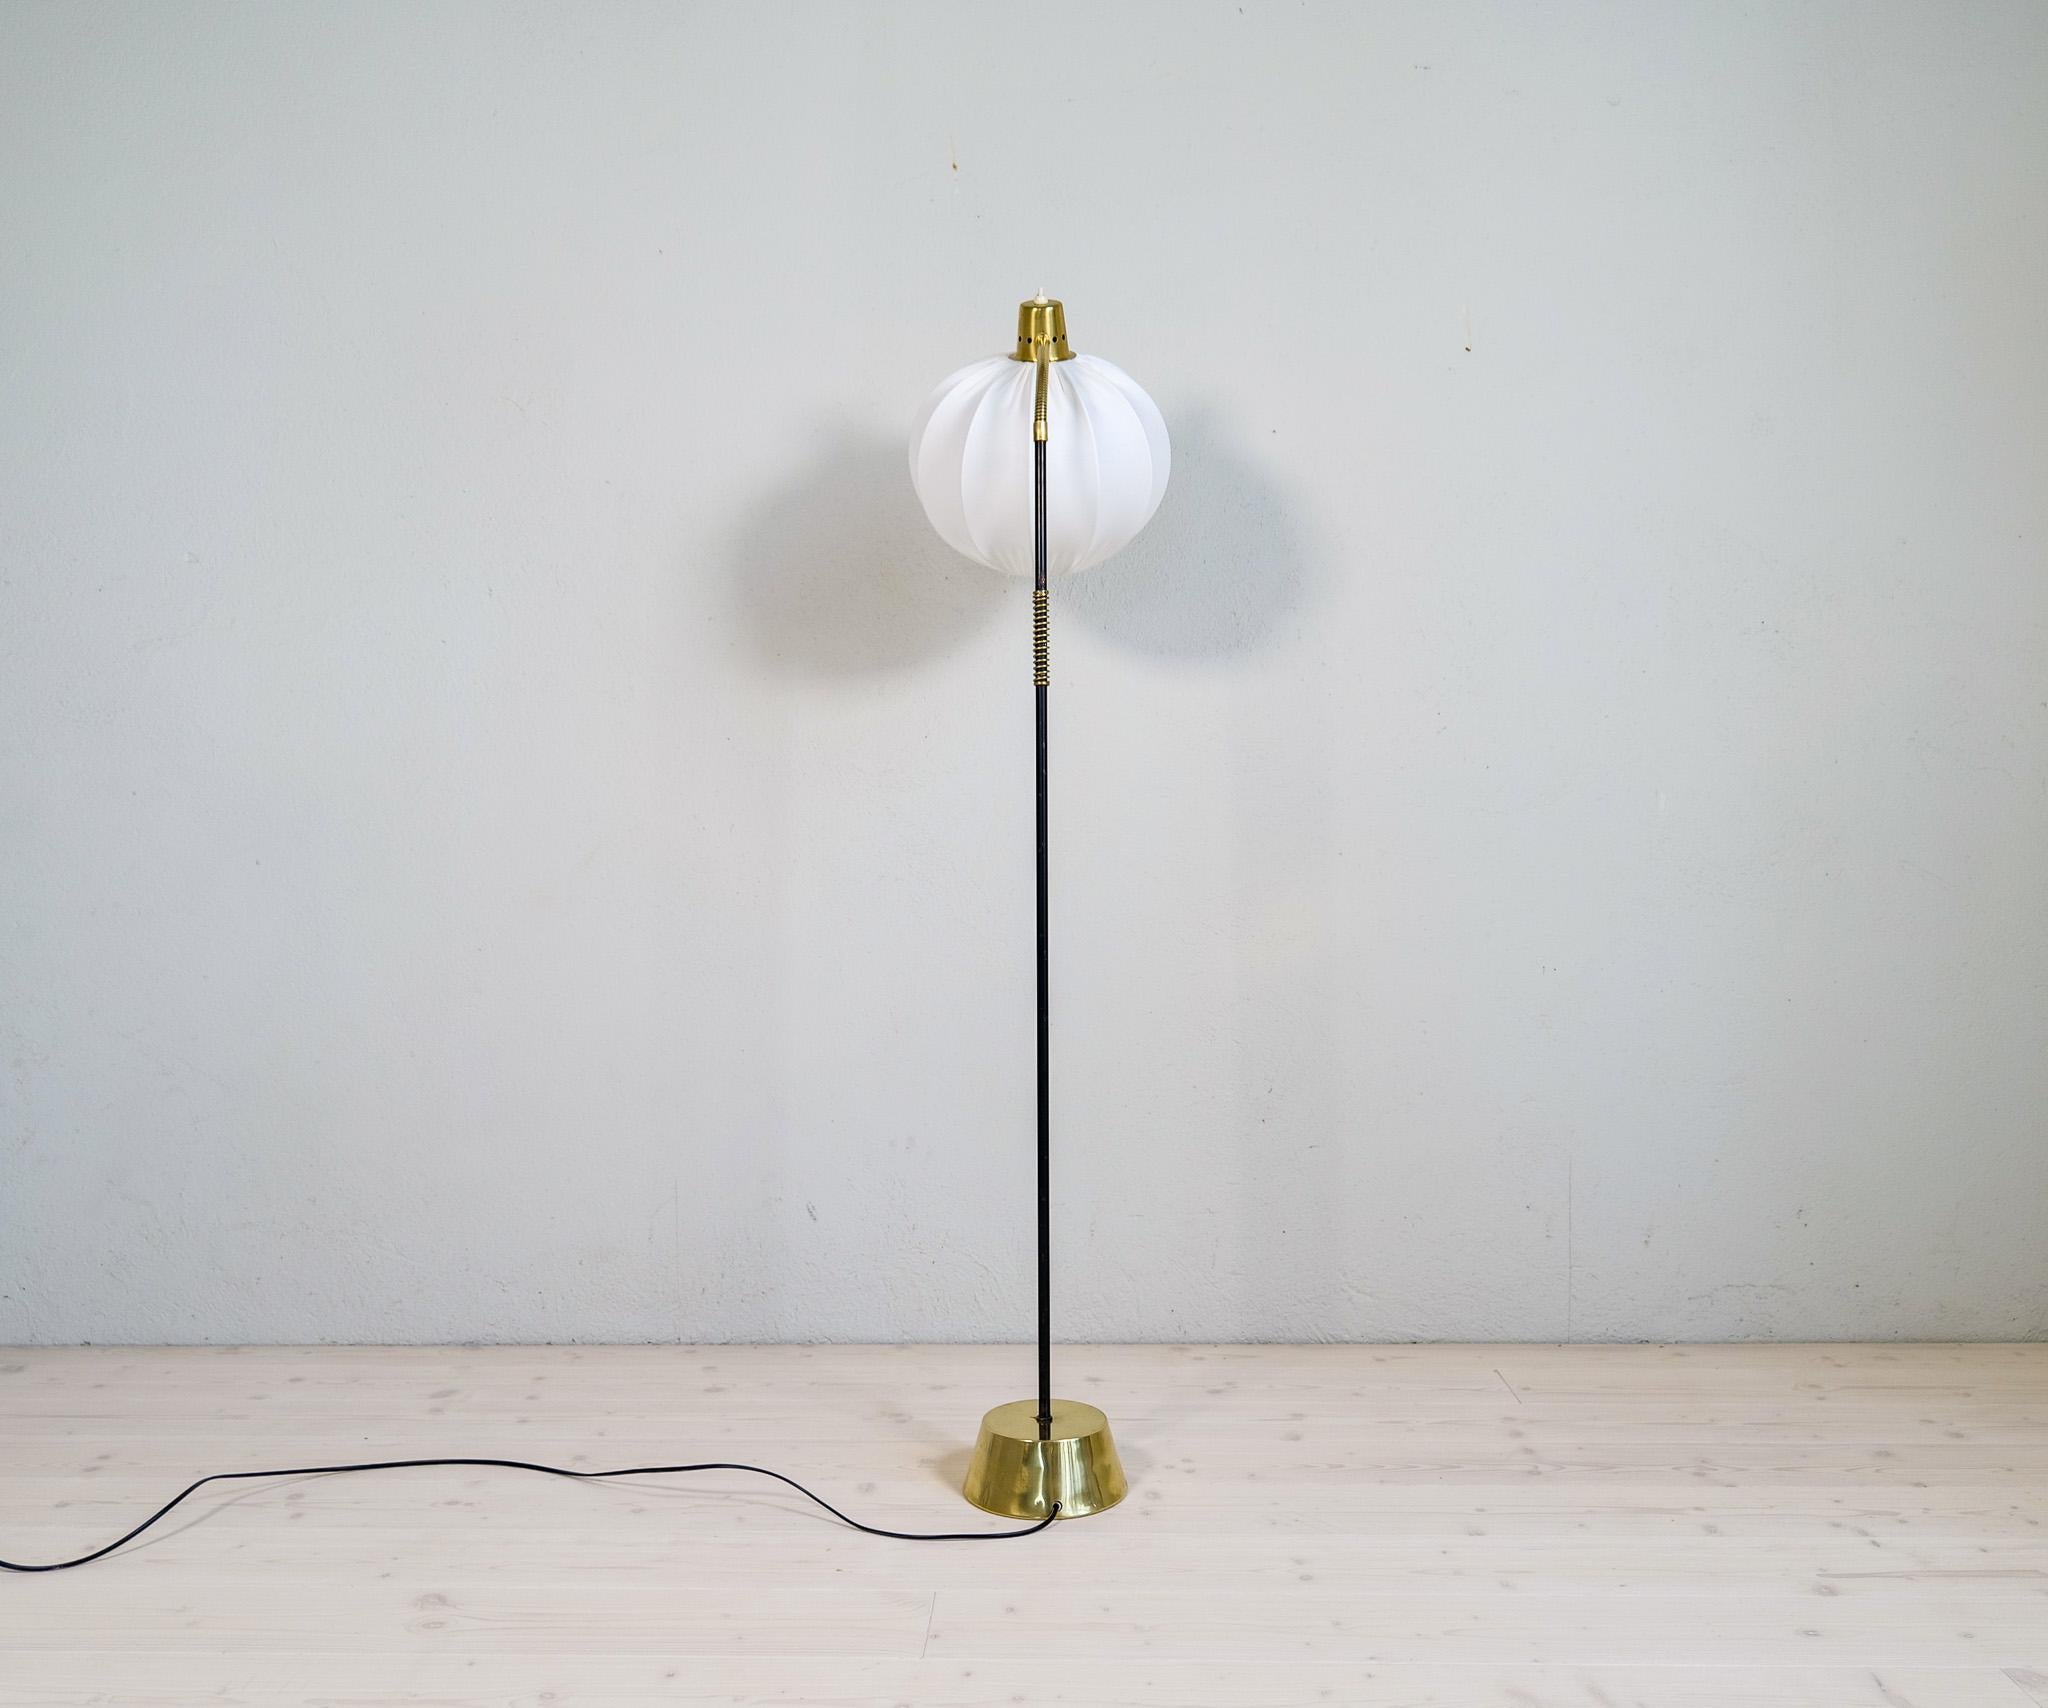 Midcentury Modern ASEA Metal and Brass Floor Lamp, Sweden, 1960s For Sale 7